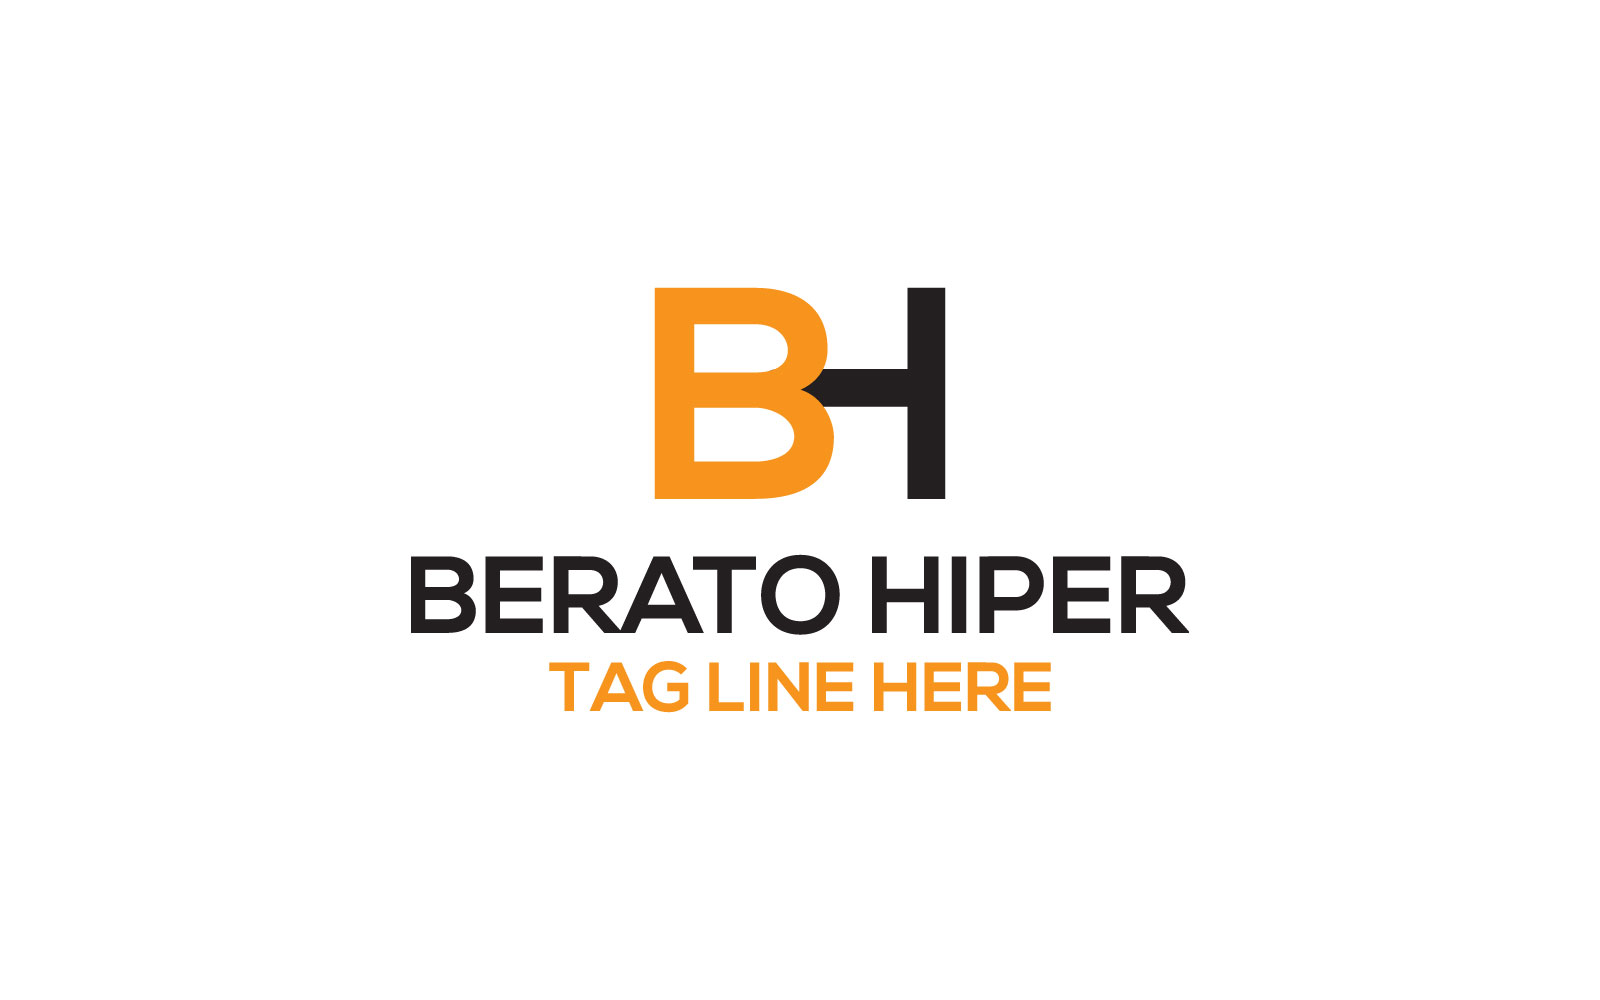 Berato Hiper  BH  letter Logo Design Template